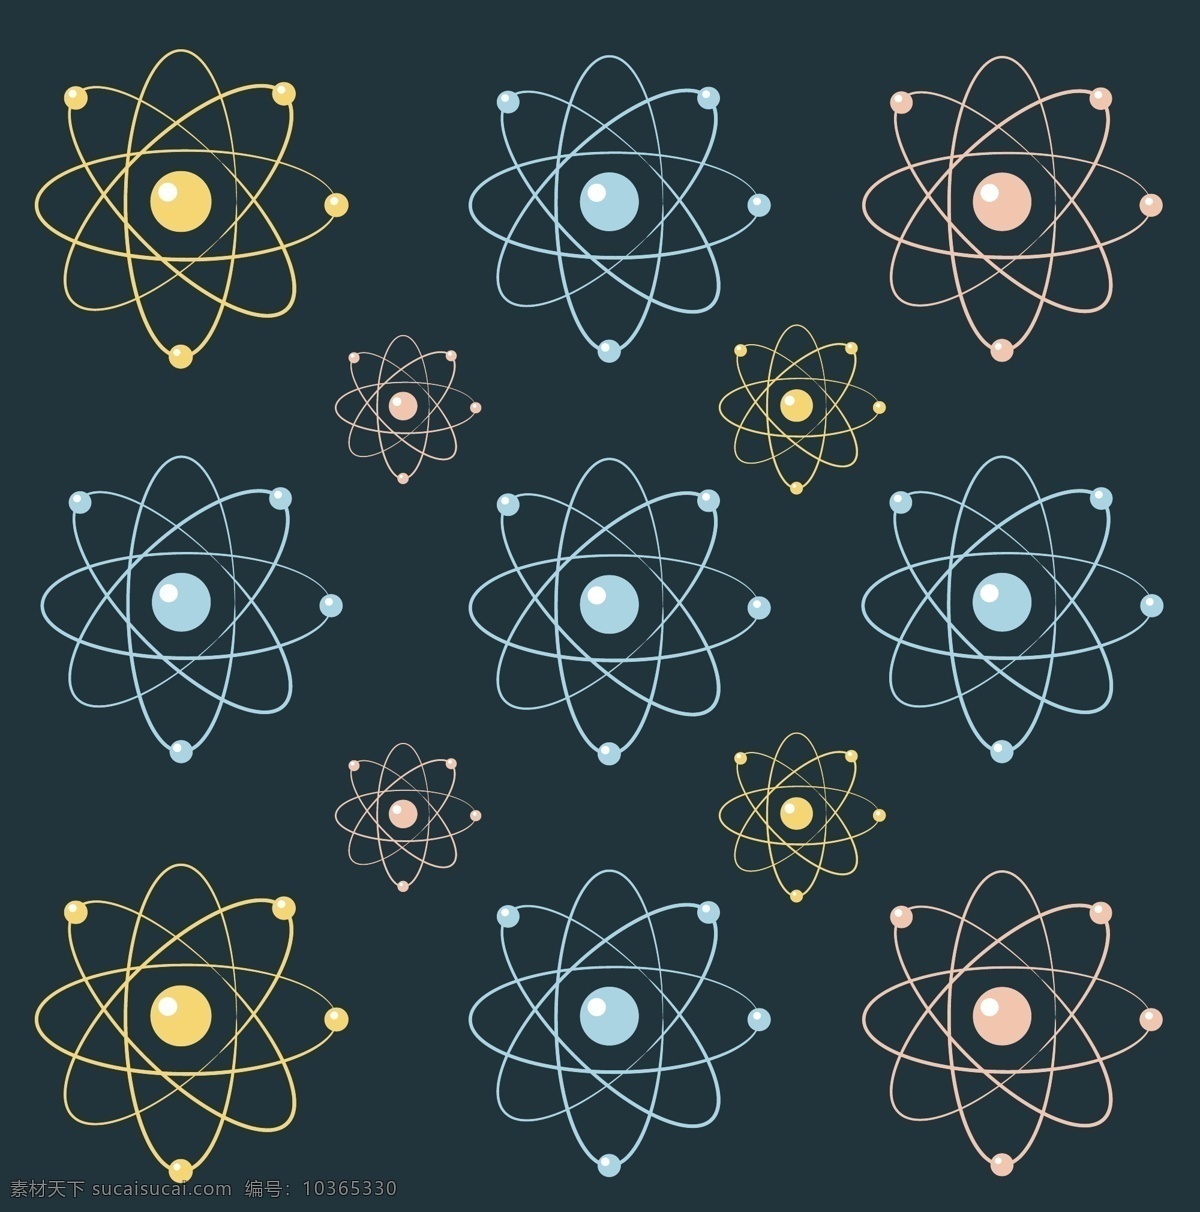 原子背景 背景 摘要背景 摘要 技术 科学 技术背景 化学 动力 原子 结构 分子 物理 核 轨道 粒子 青色 天蓝色